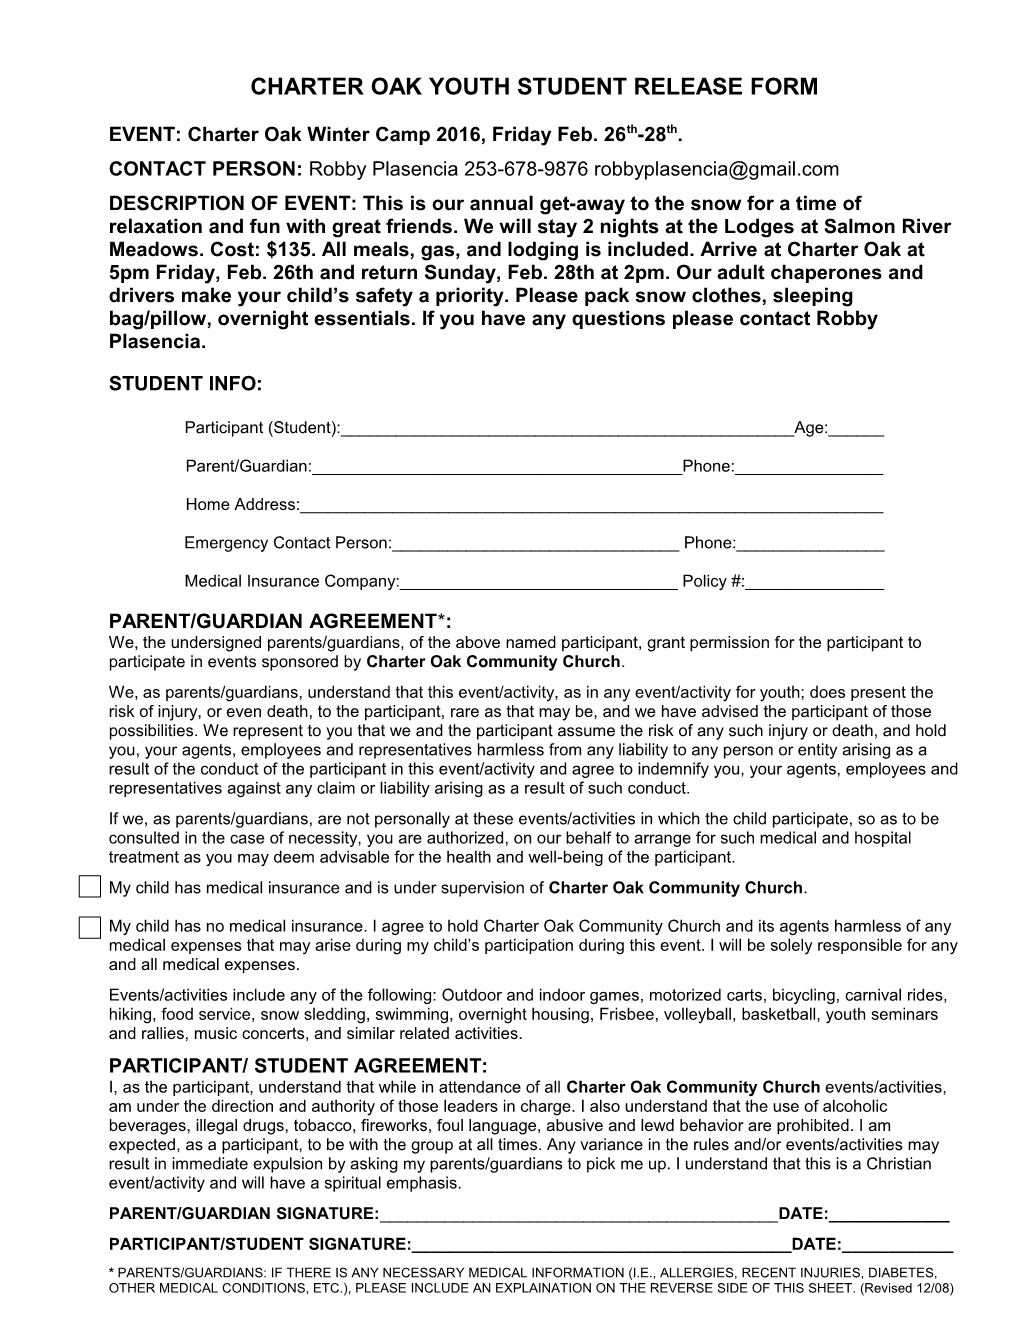 Parental Permission Form s1